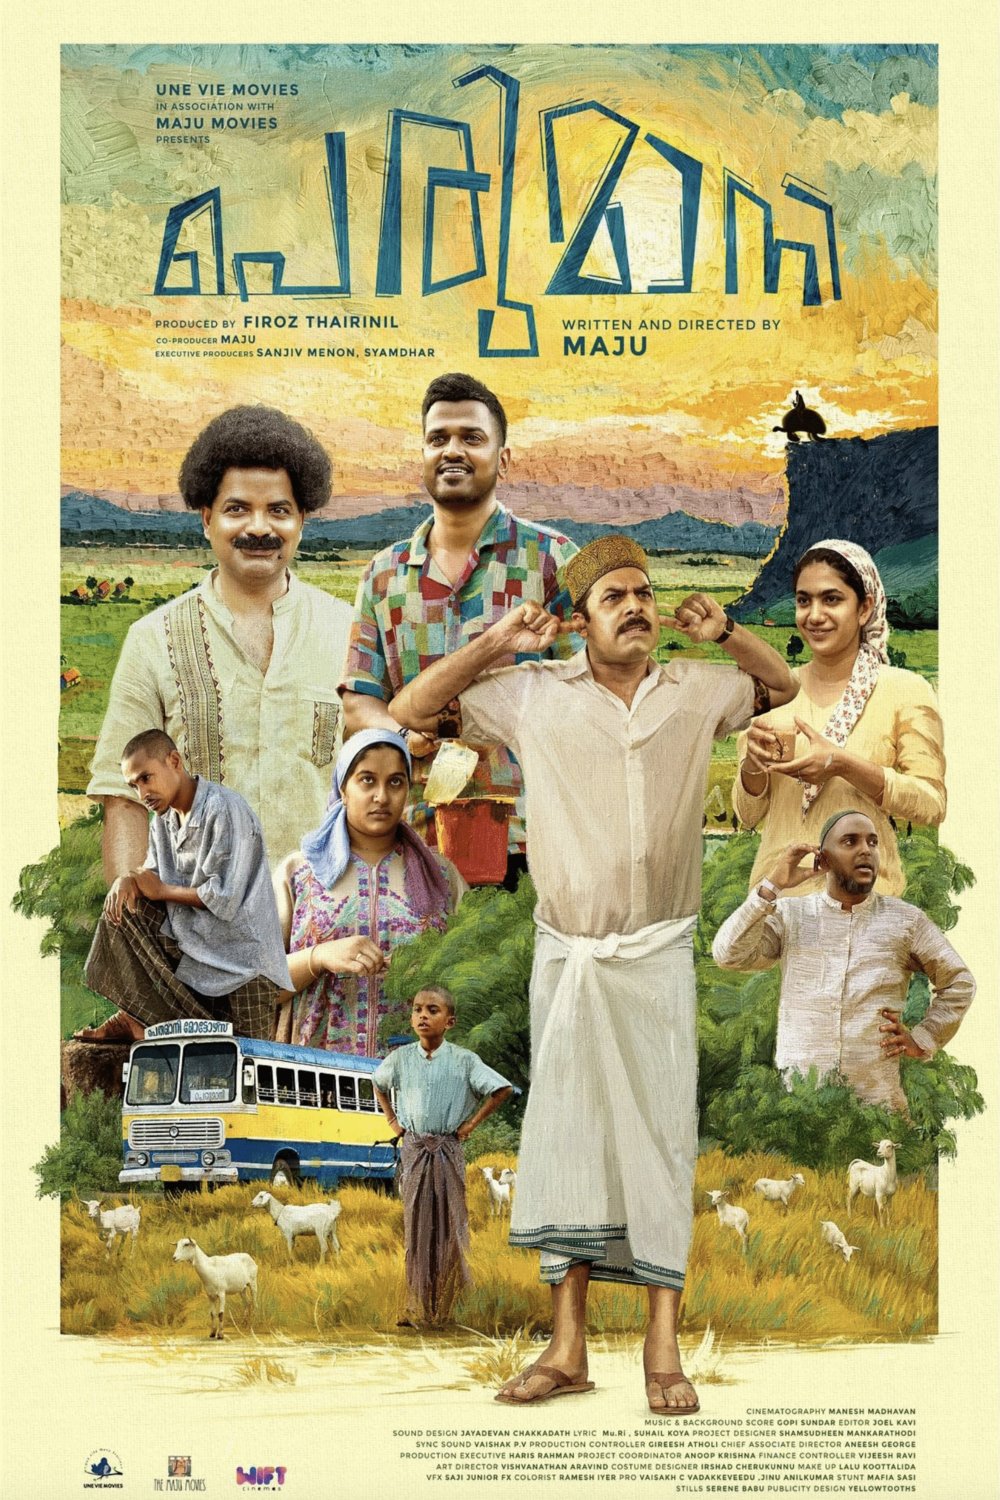 Malayalam poster of the movie Perumani